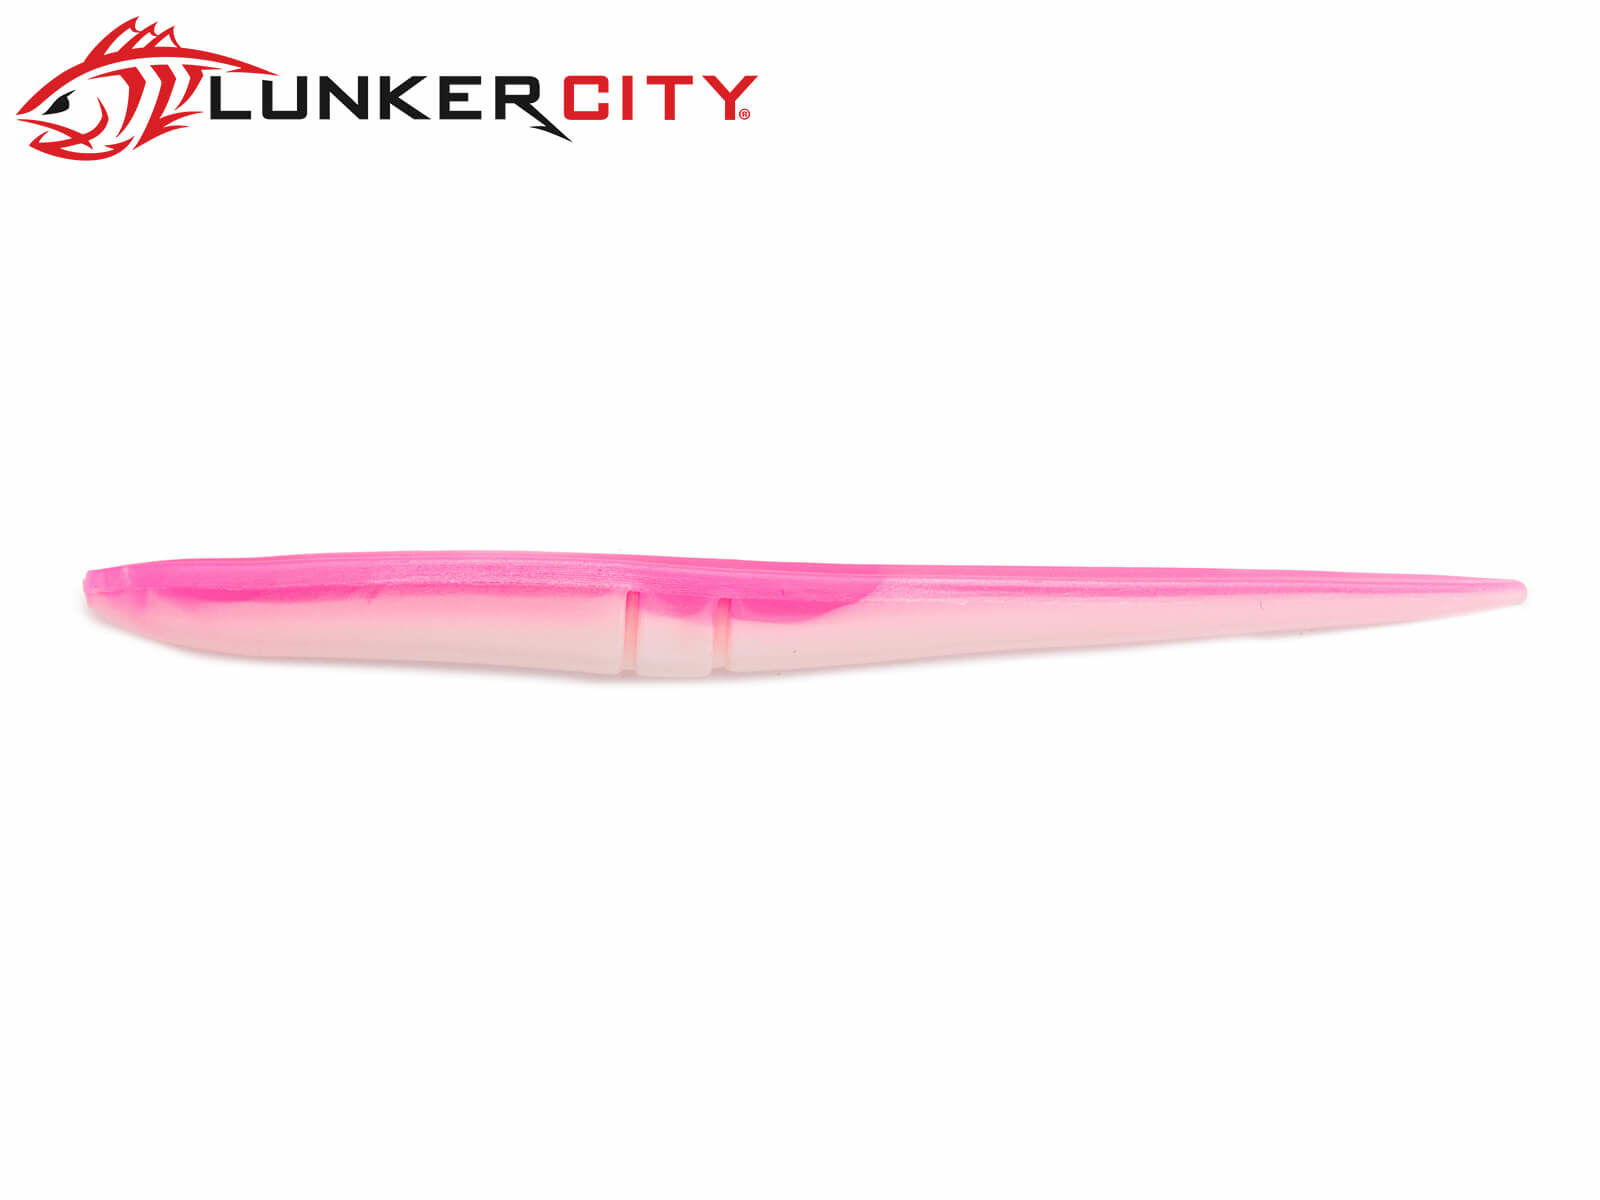 Lunker City Slug-Go 9 – Yeehaa